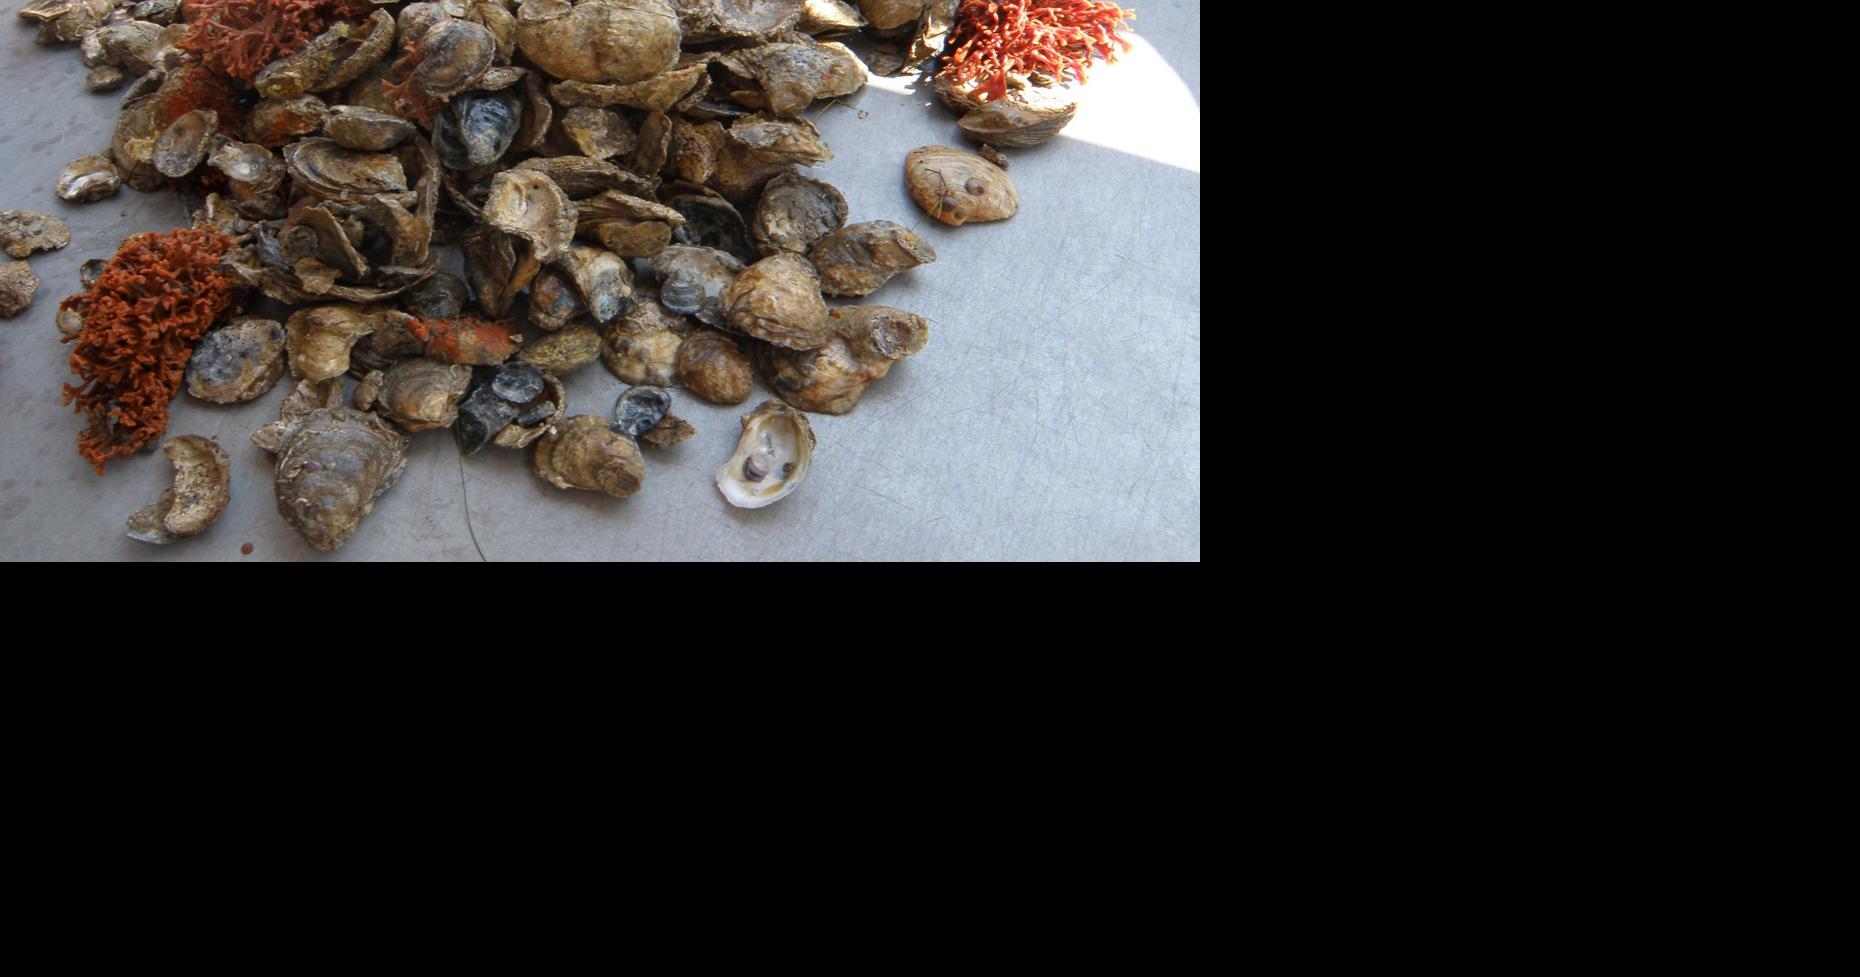 Restoring wild oyster population proving a challenge around Chesapeake Bay